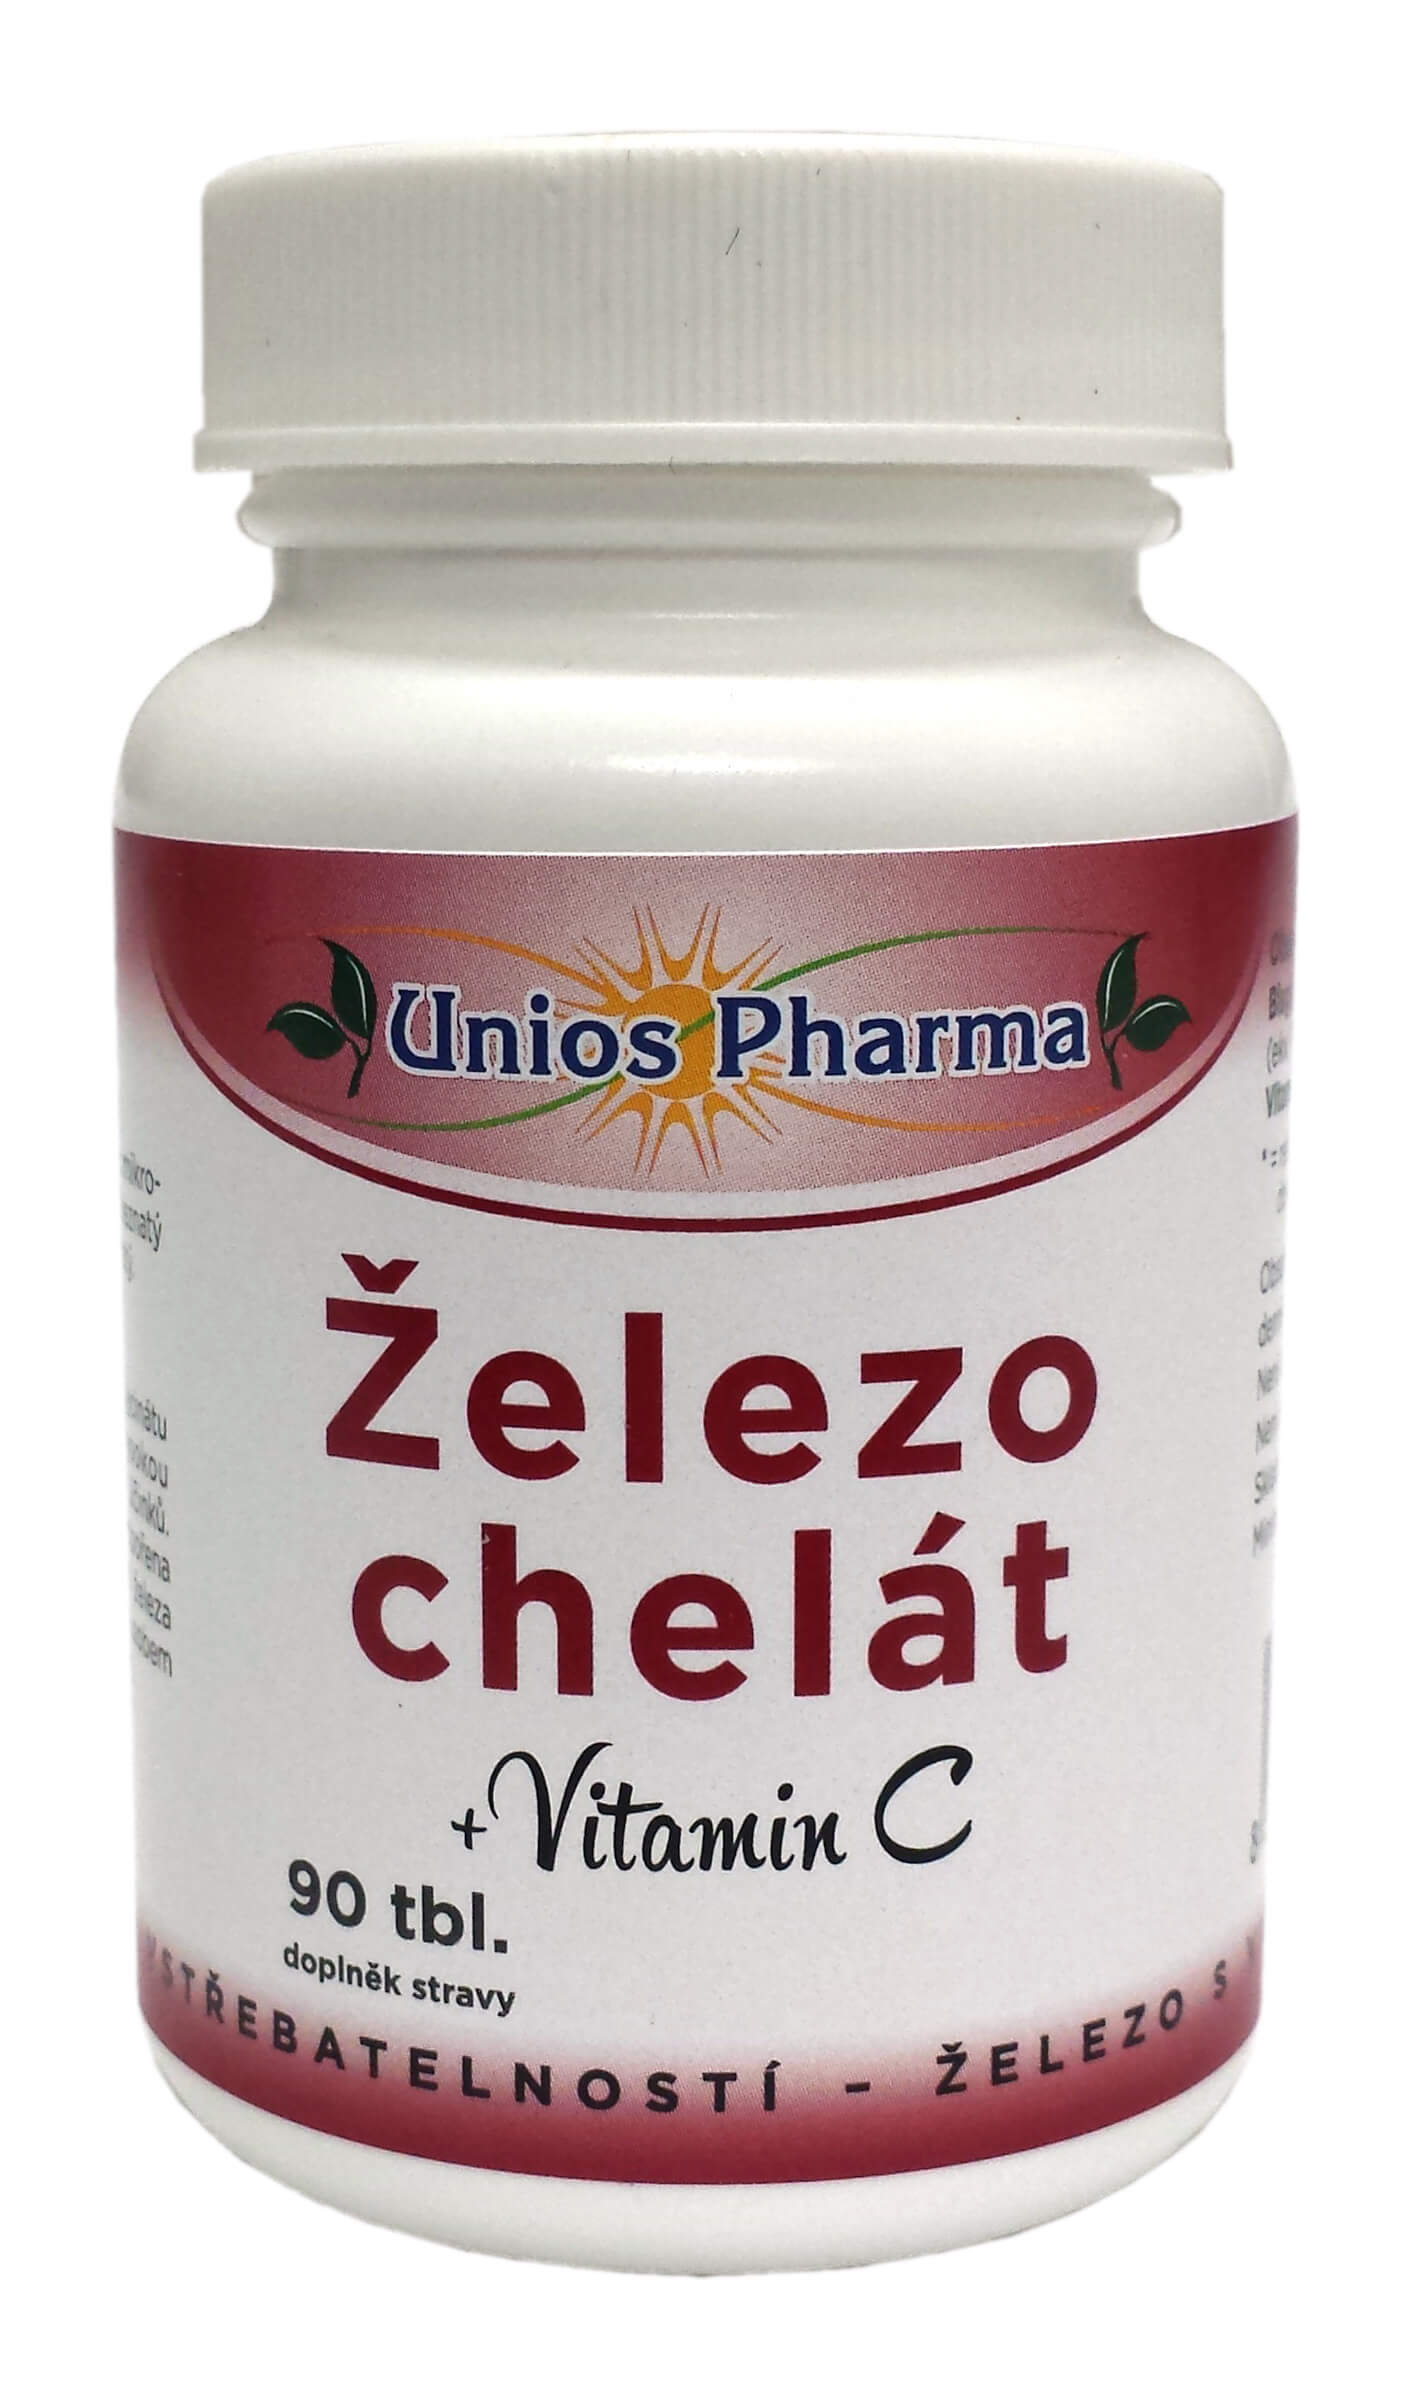 Zobrazit detail výrobku Unios Pharma Železo chelát + vitamín C 90 tbl. + 2 měsíce na vrácení zboží